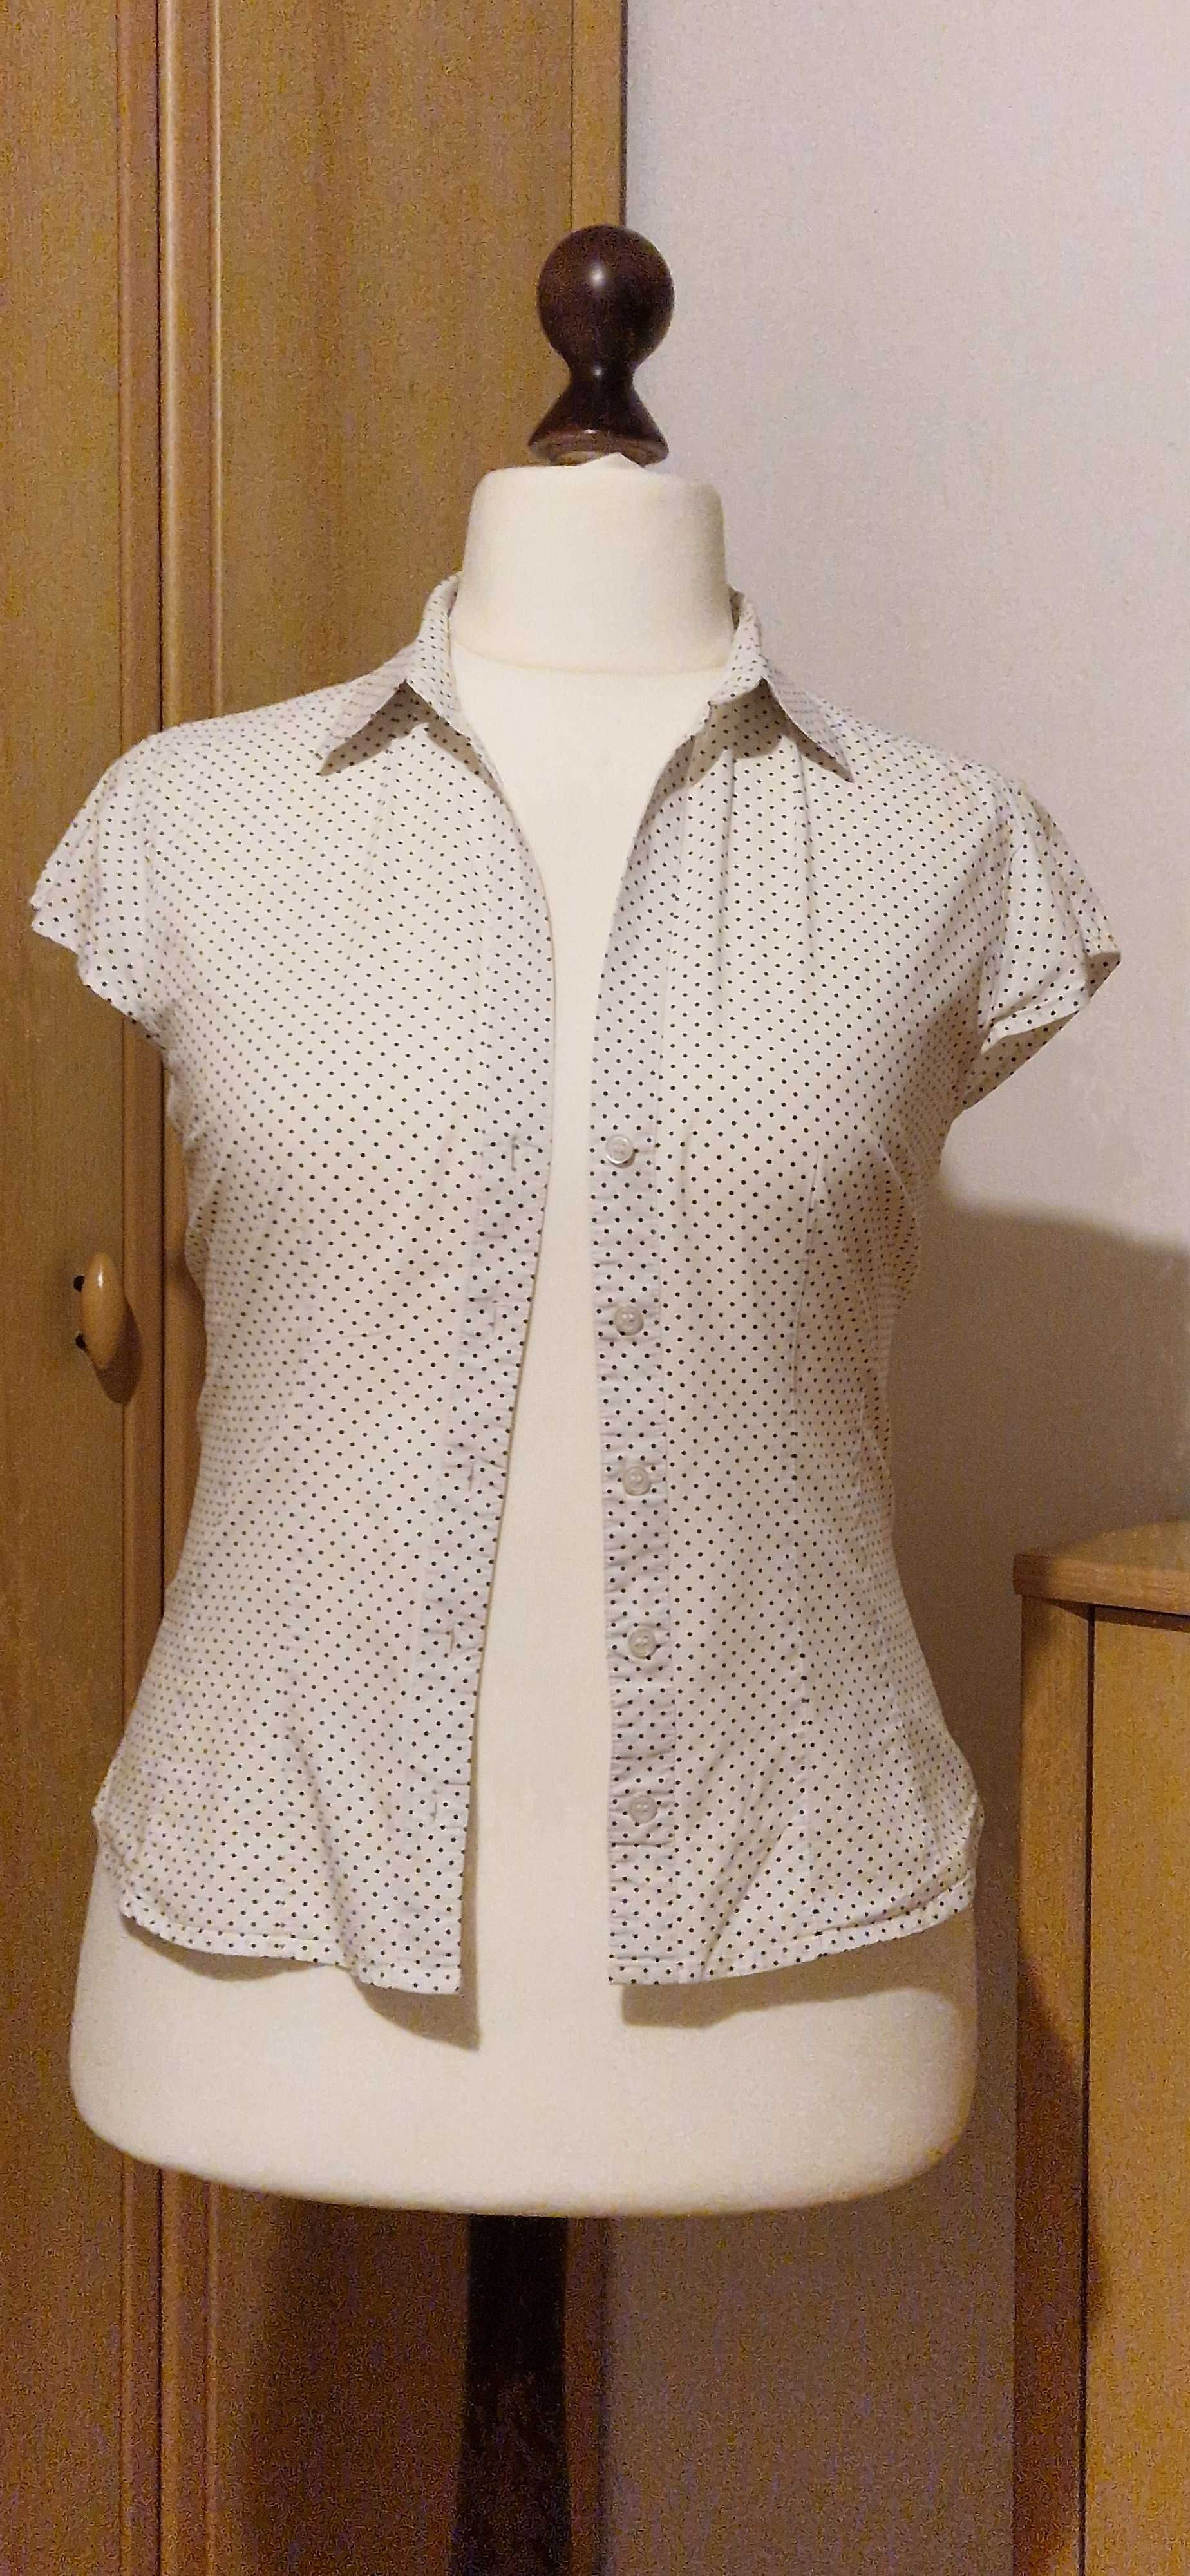 Bluzka damska taliowana, biała w czarne kropki, H&M, R 44